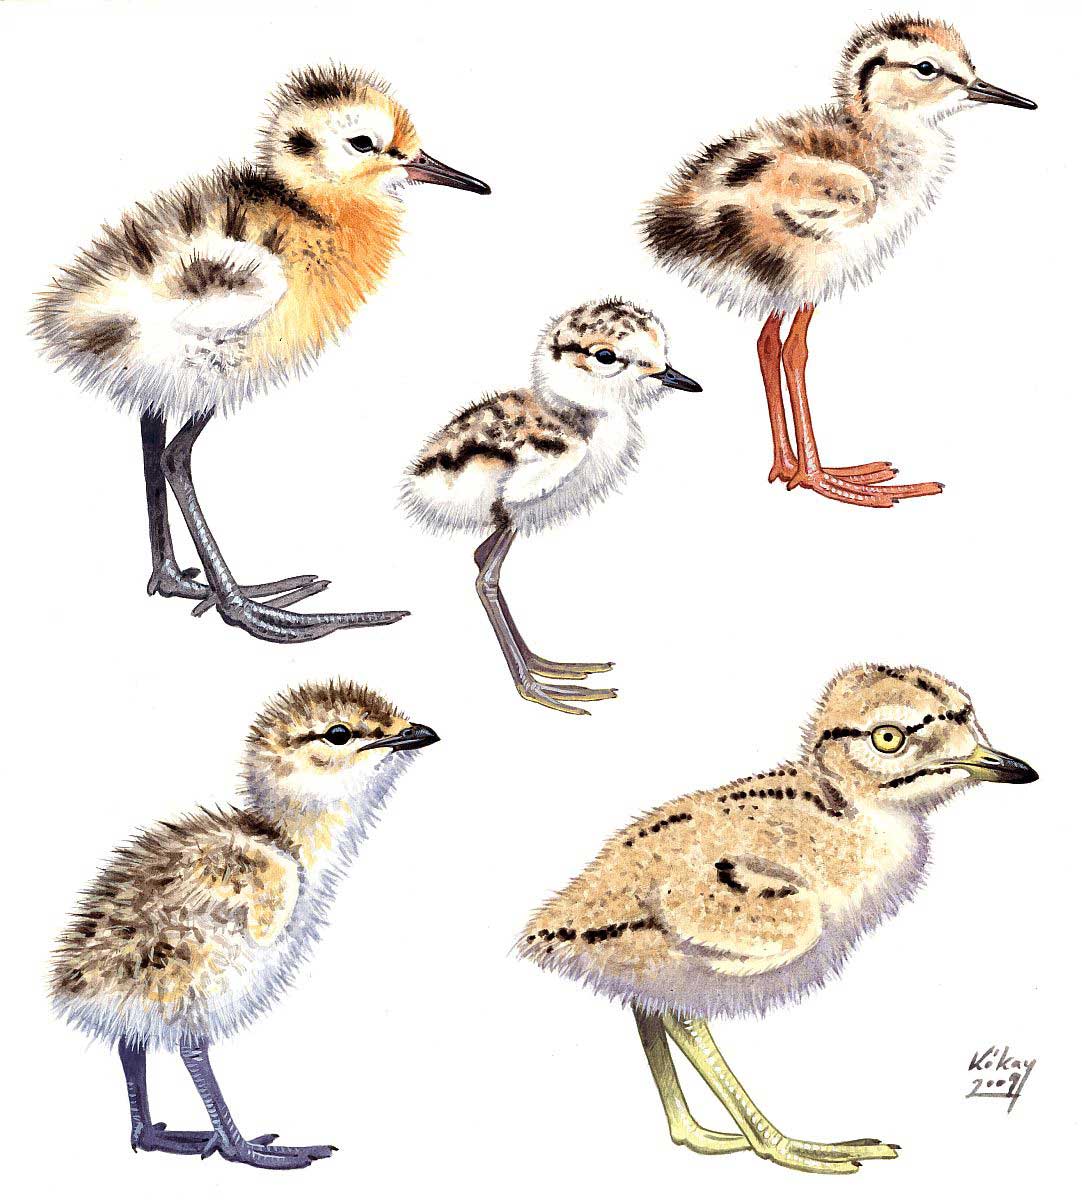 Shorebird chicks, watercolour on paper